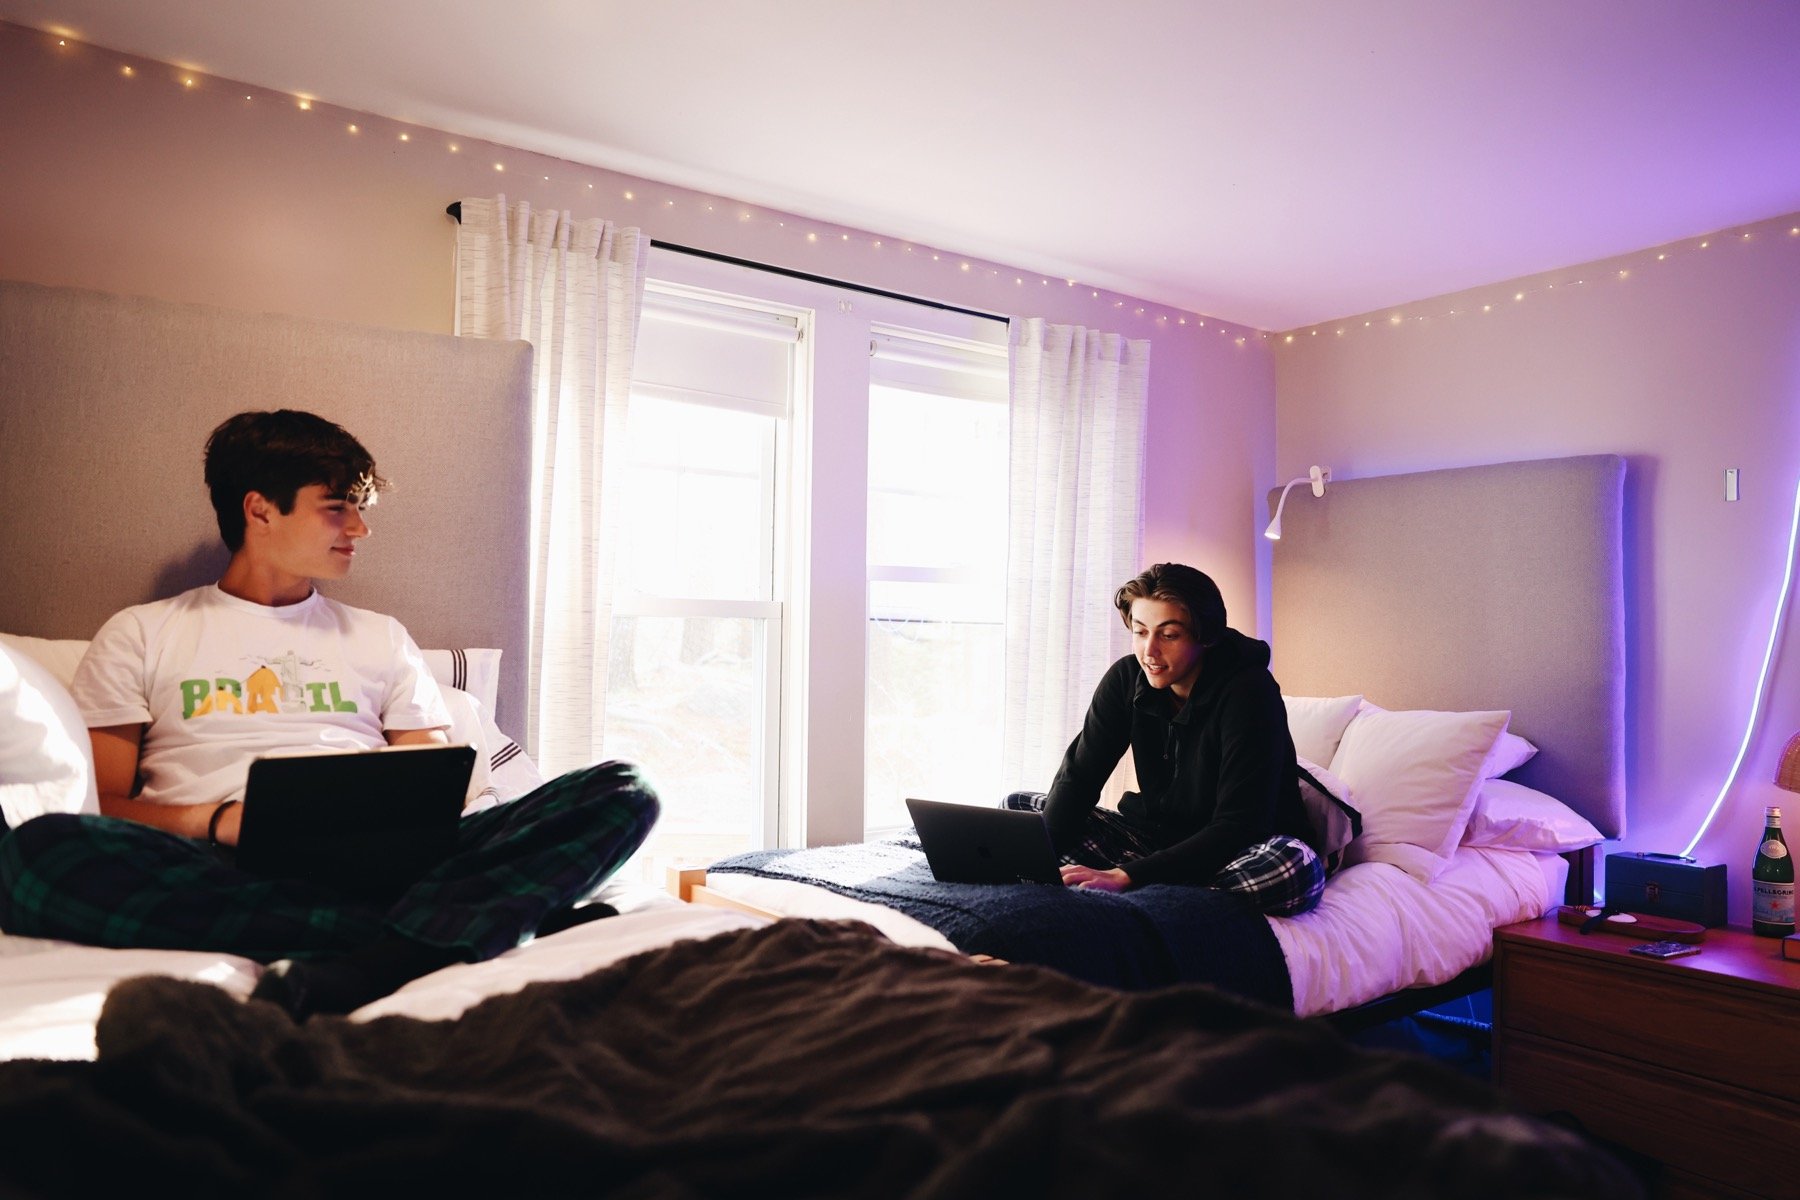 Derek in dorm with roommate